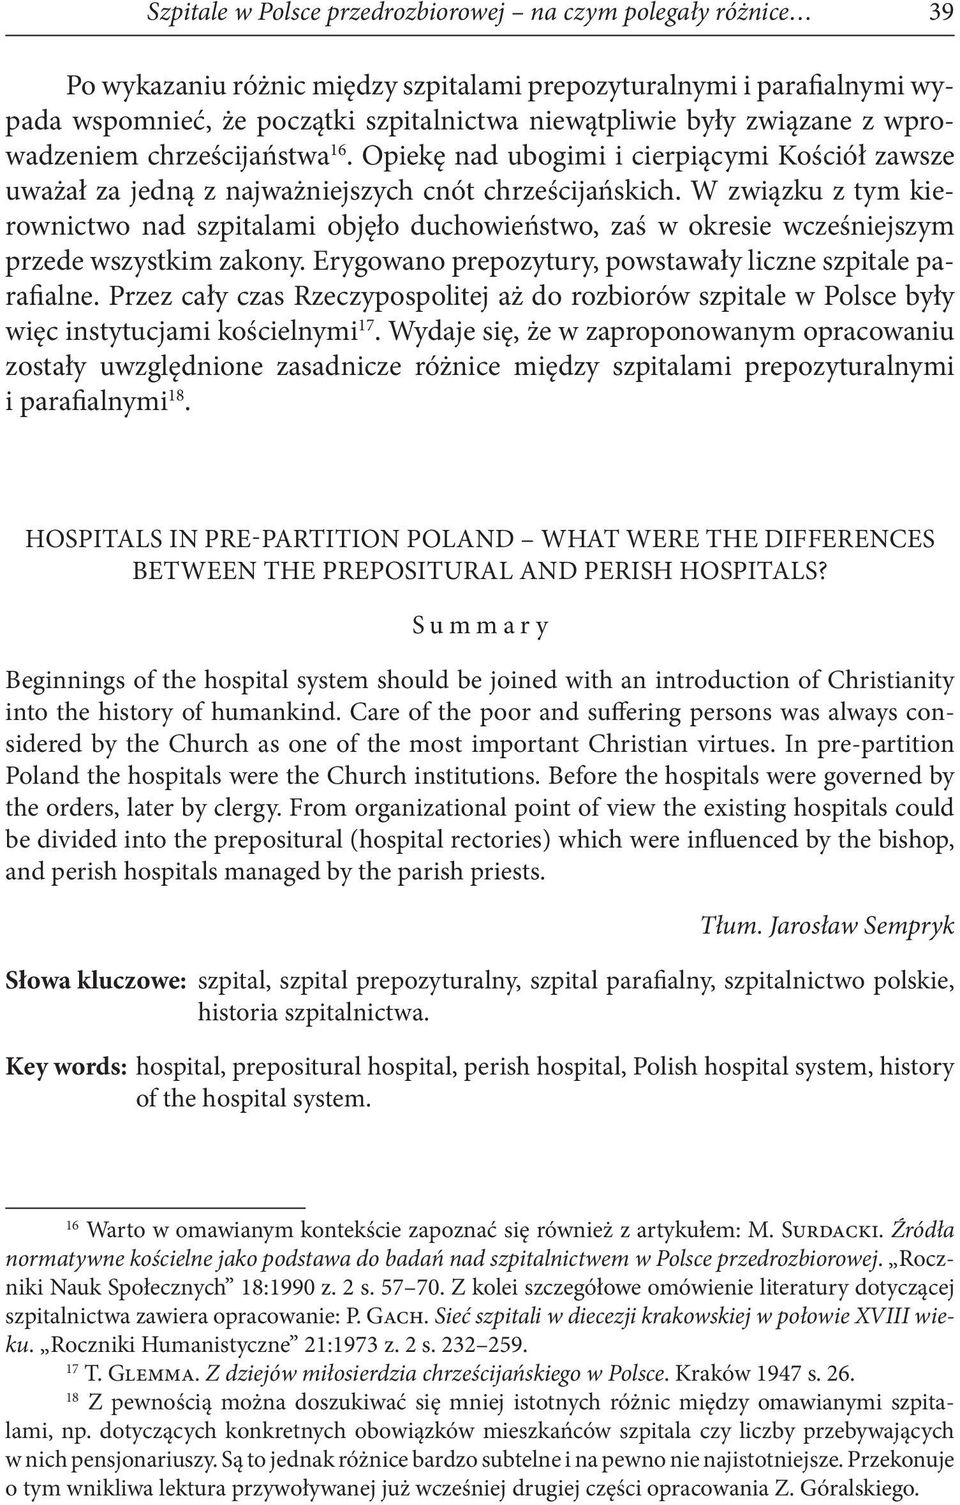 W związku z tym kierownictwo nad szpitalami objęło duchowieństwo, zaś w okresie wcześniejszym przede wszystkim zakony. Erygowano prepozytury, powstawały liczne szpitale parafialne.